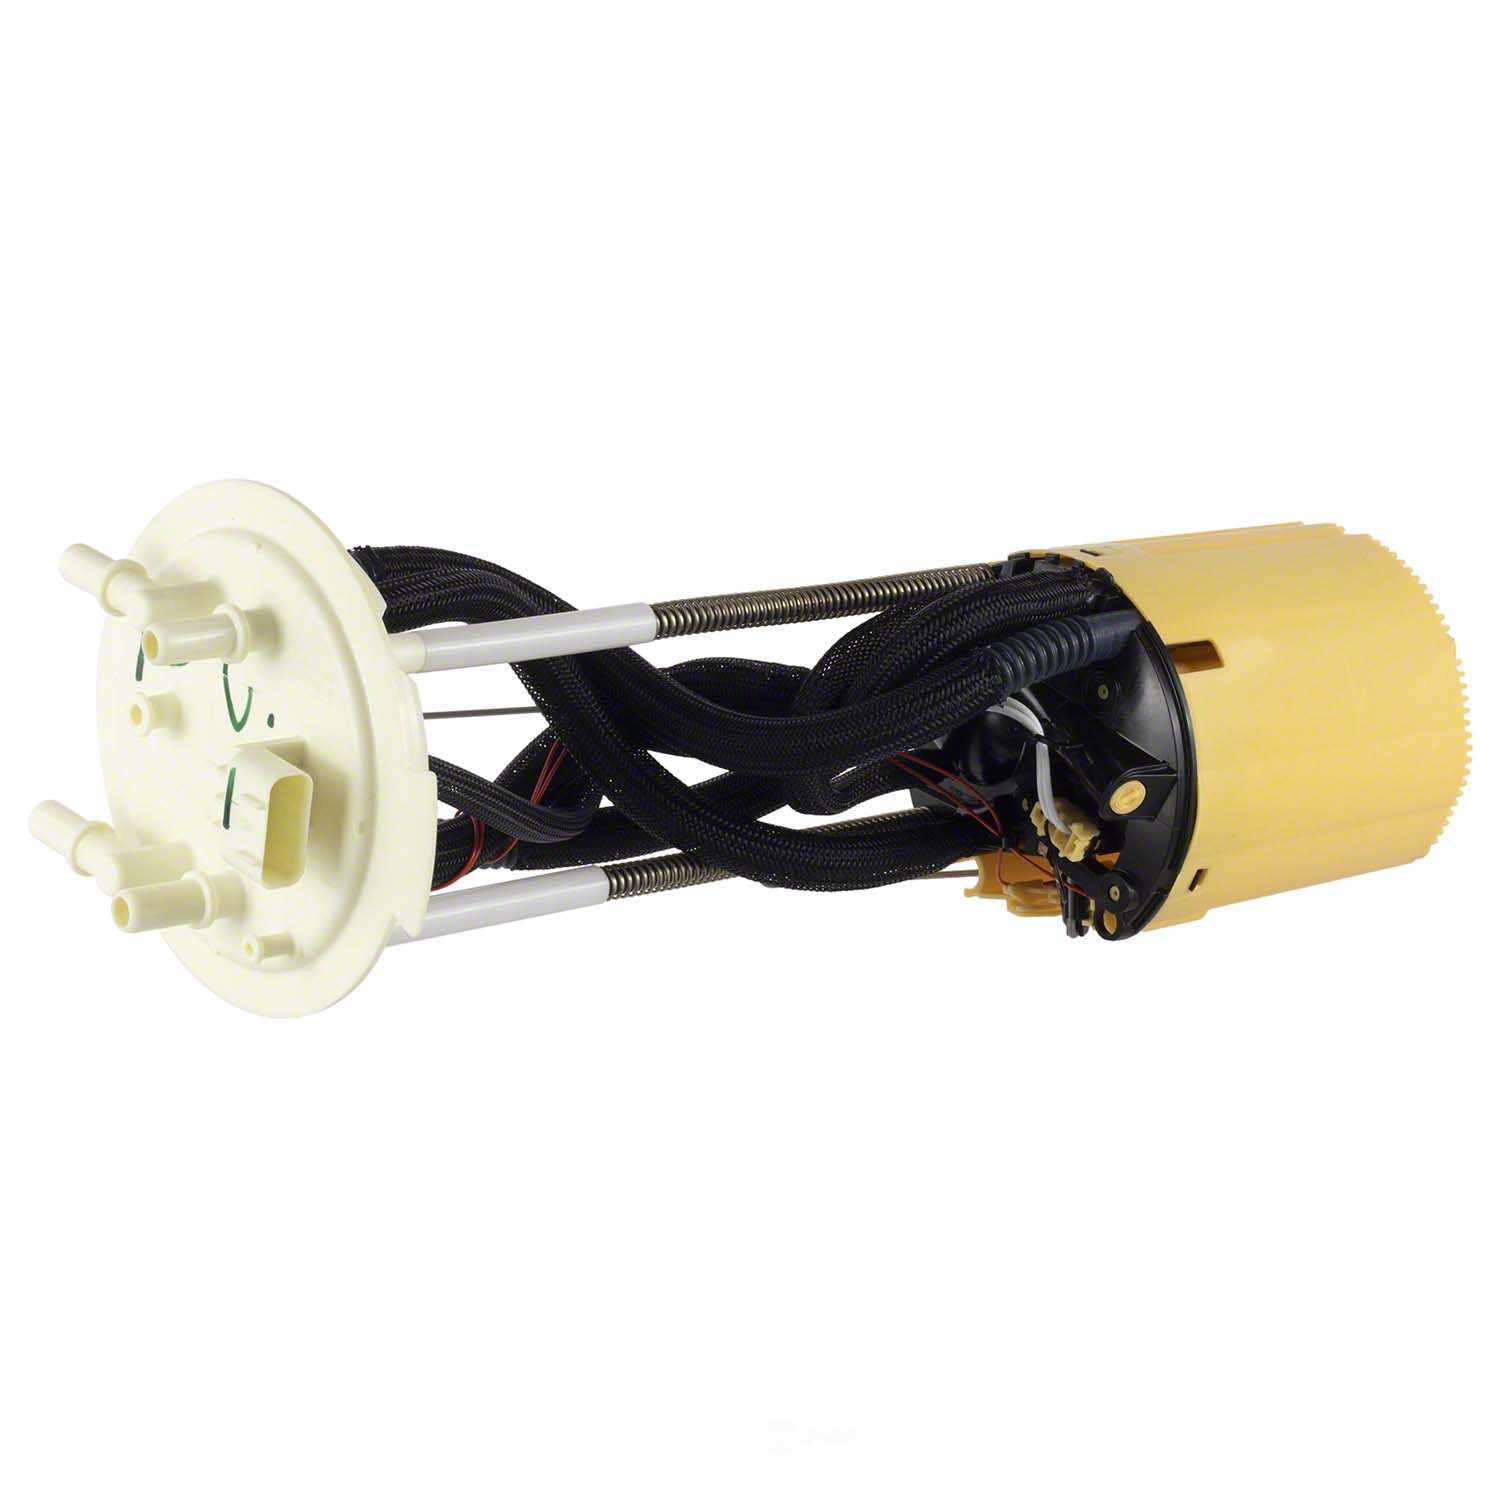 MOTORCRAFT - Fuel Pump And Sender Assembly - MOT PFS-1390